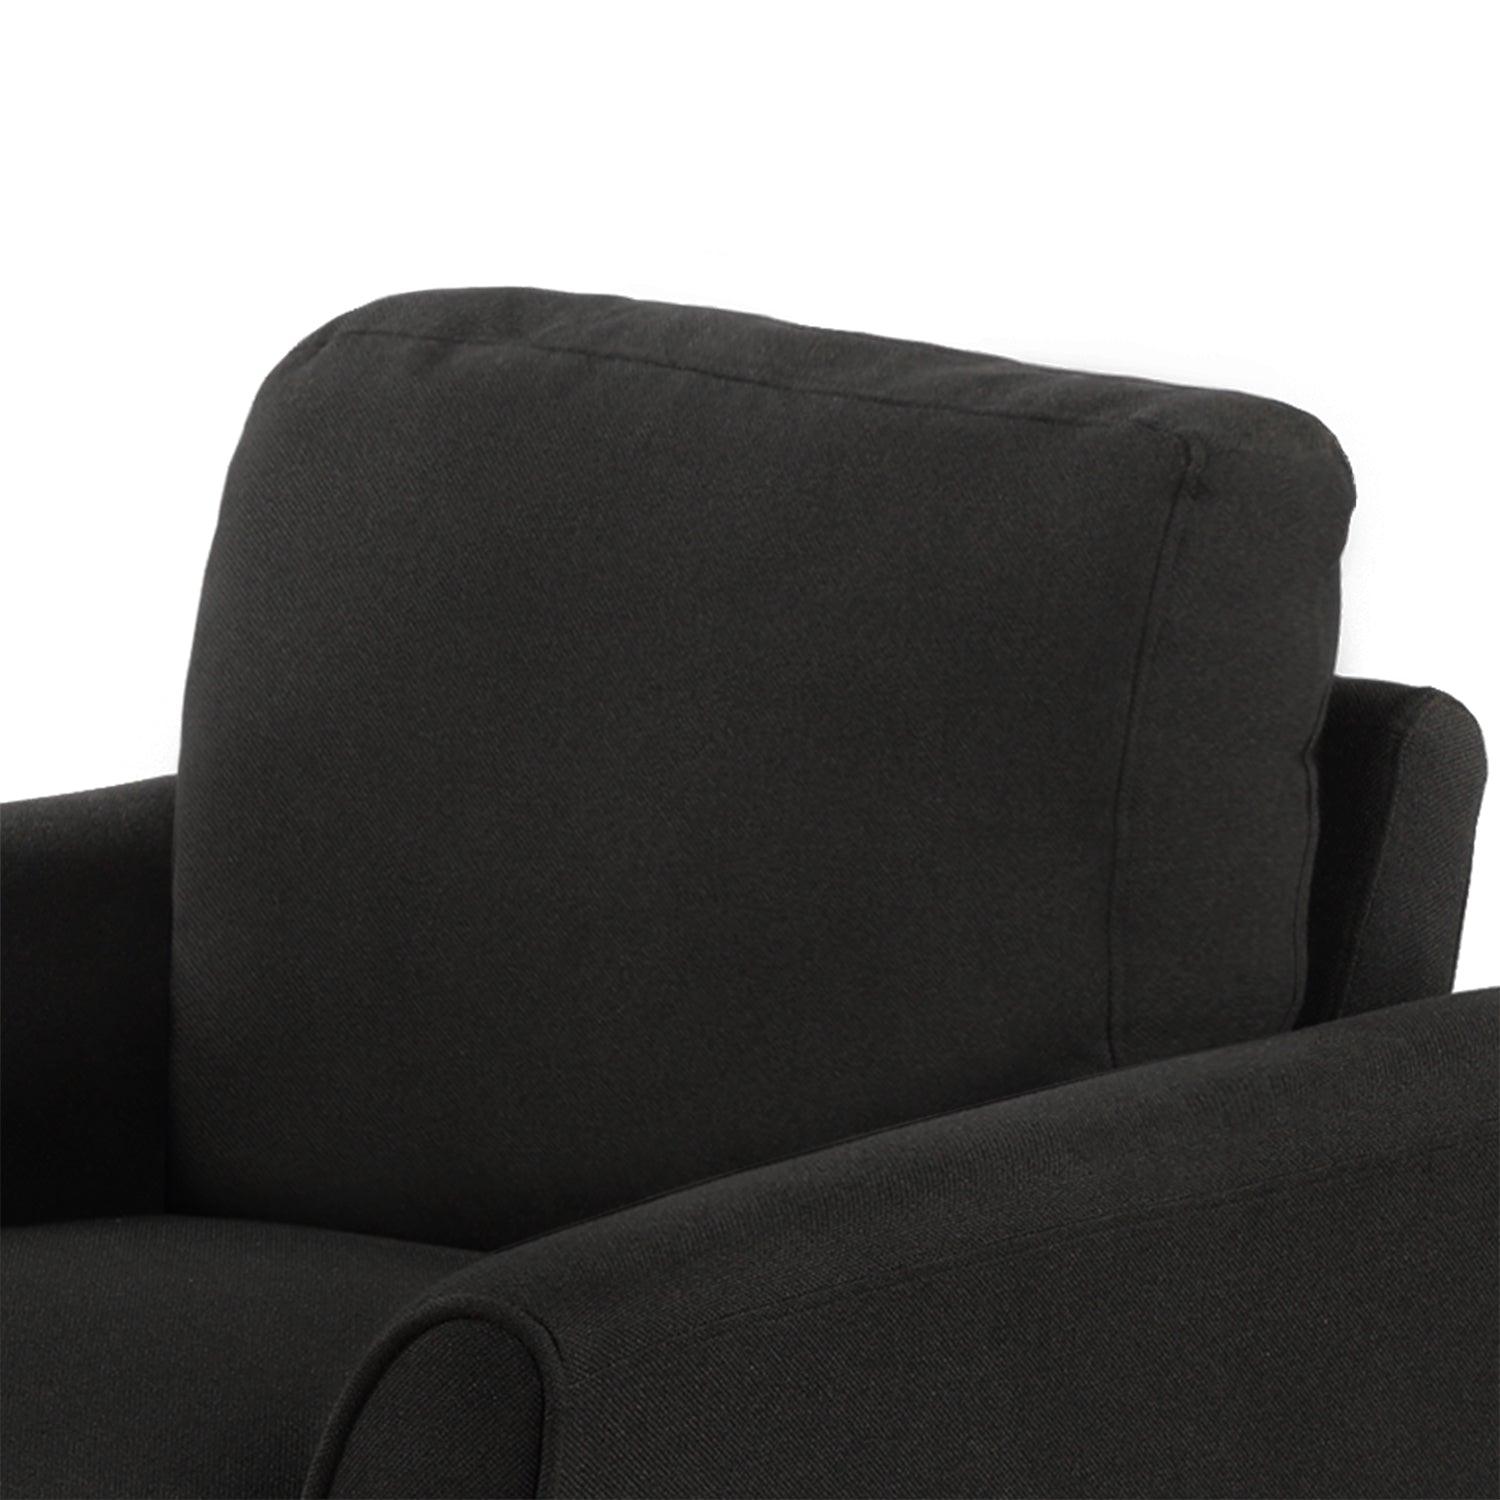 Living Room Furniture Armrest Single Sofa (Black) - FurniFindUSA